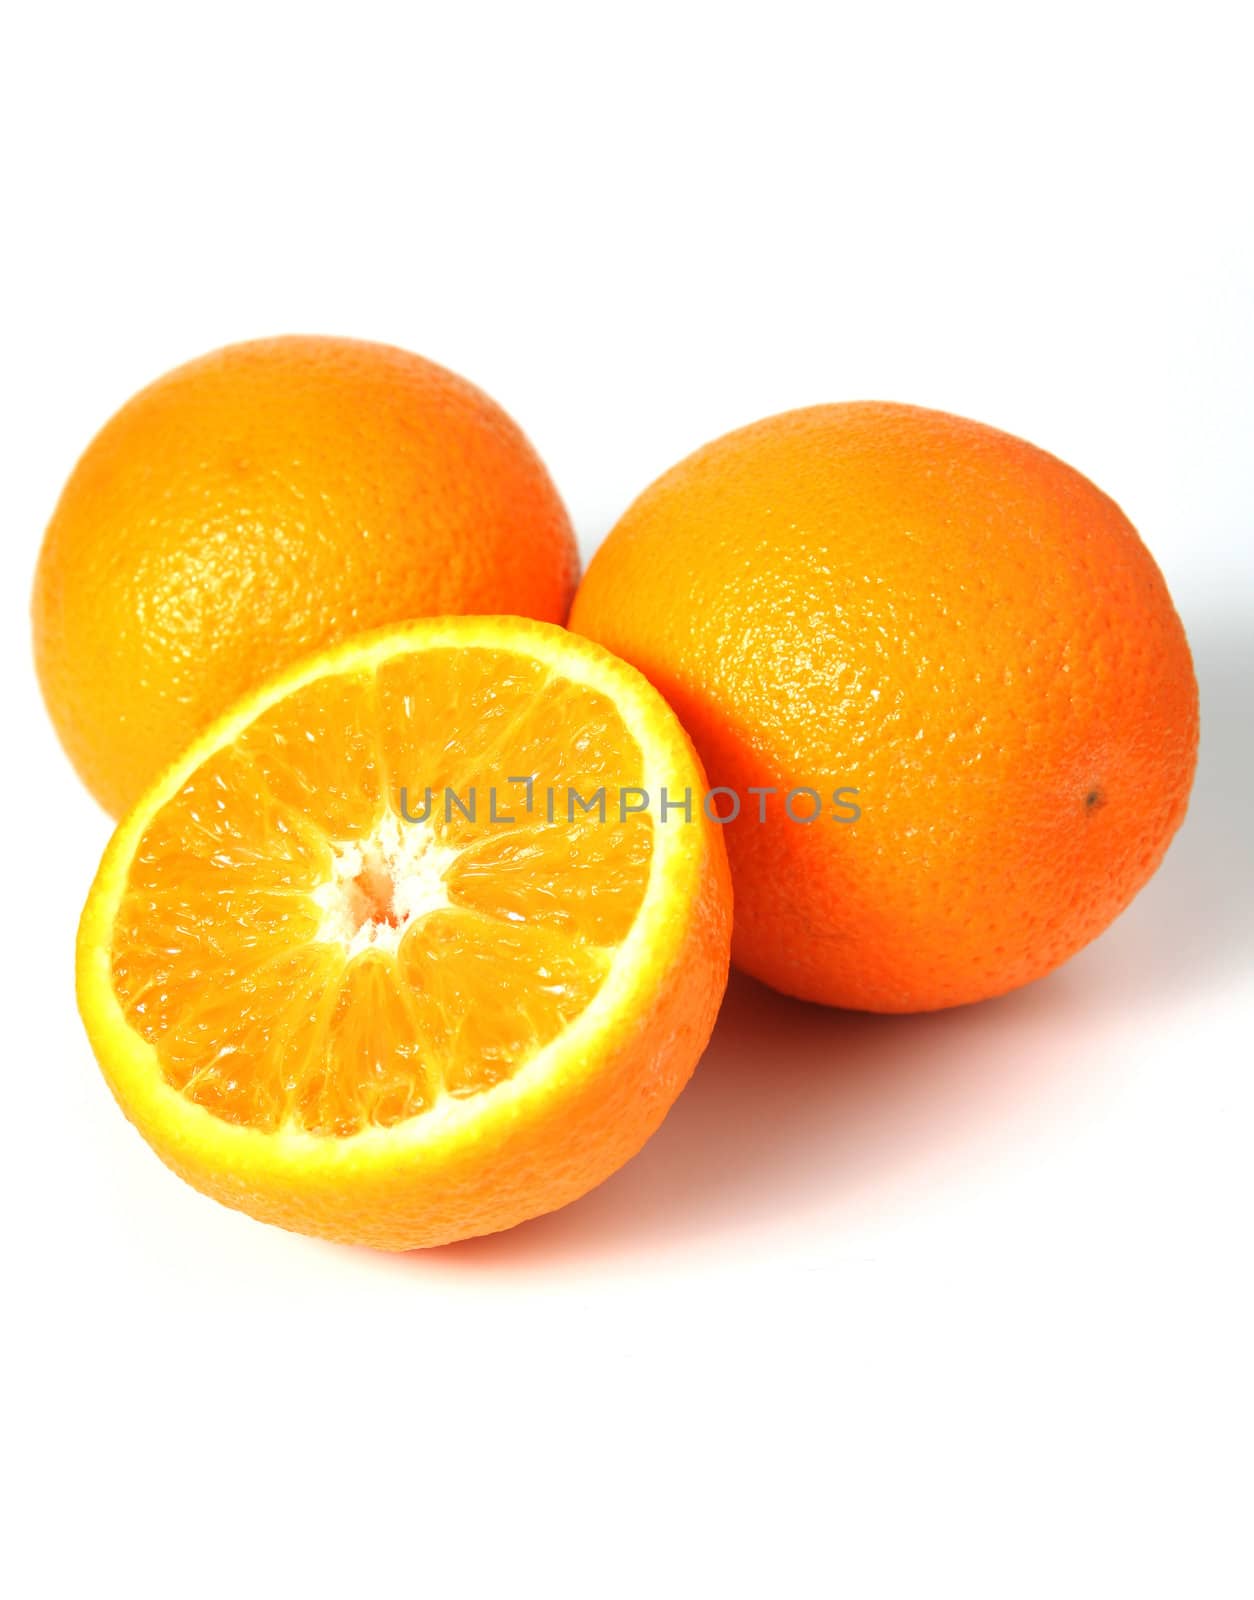 ripe orange fruit isolated on white